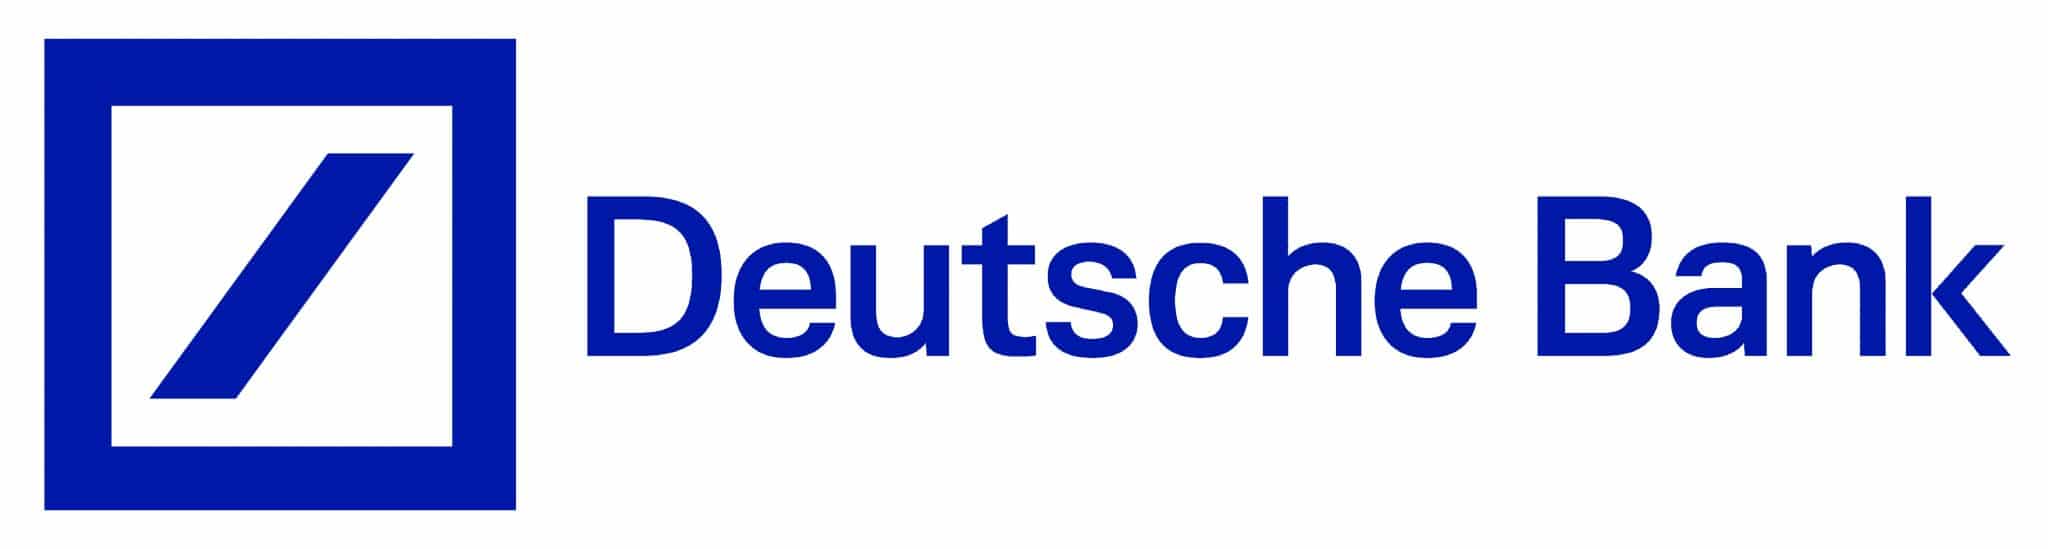 Deutsche Bank Logo Scaled